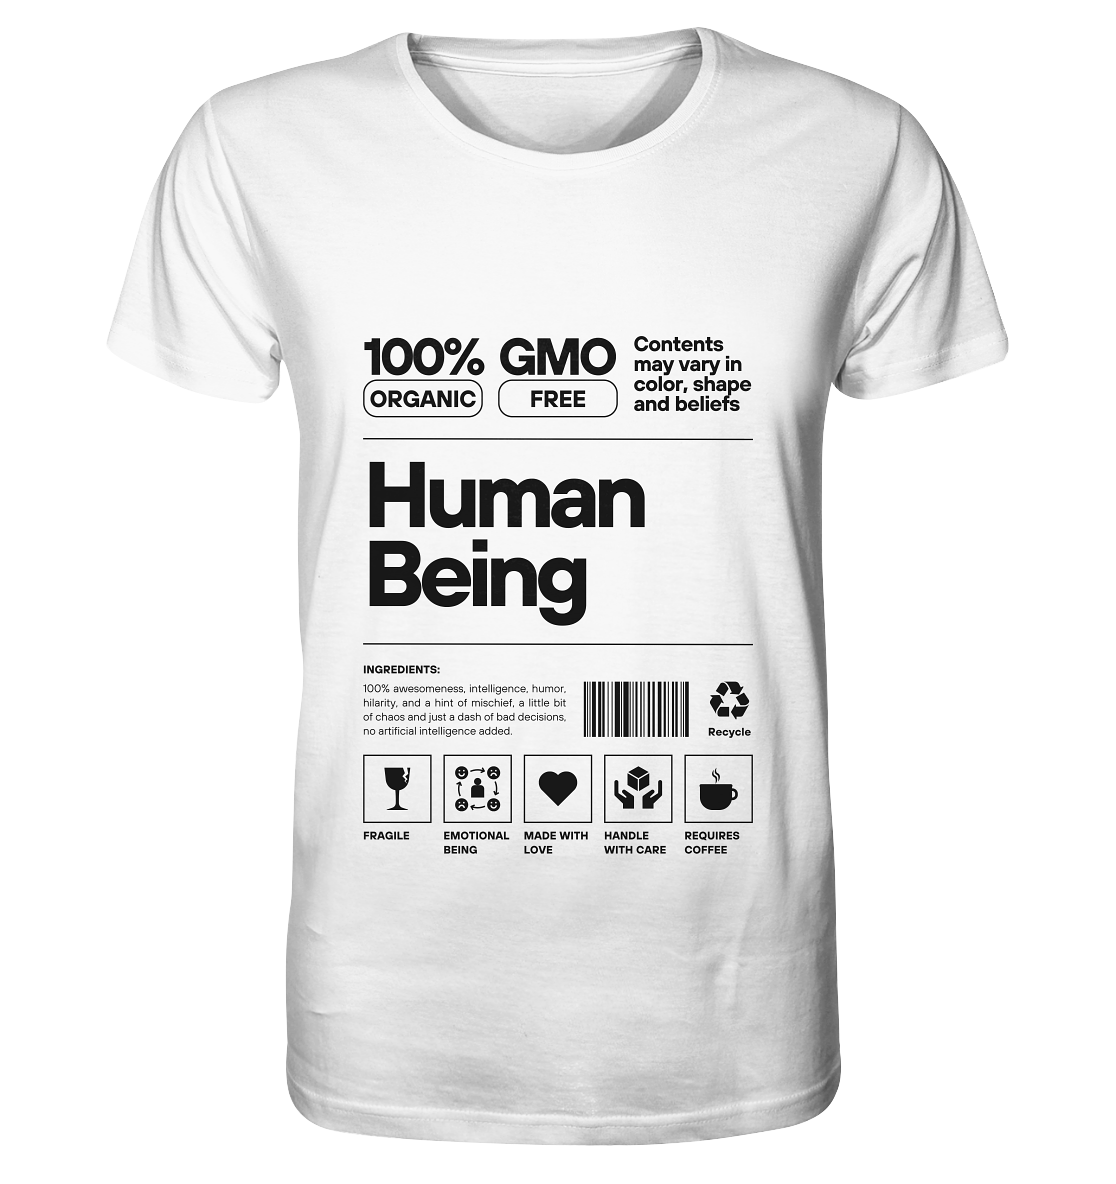 Human Being | Premium organic men's t-shirt